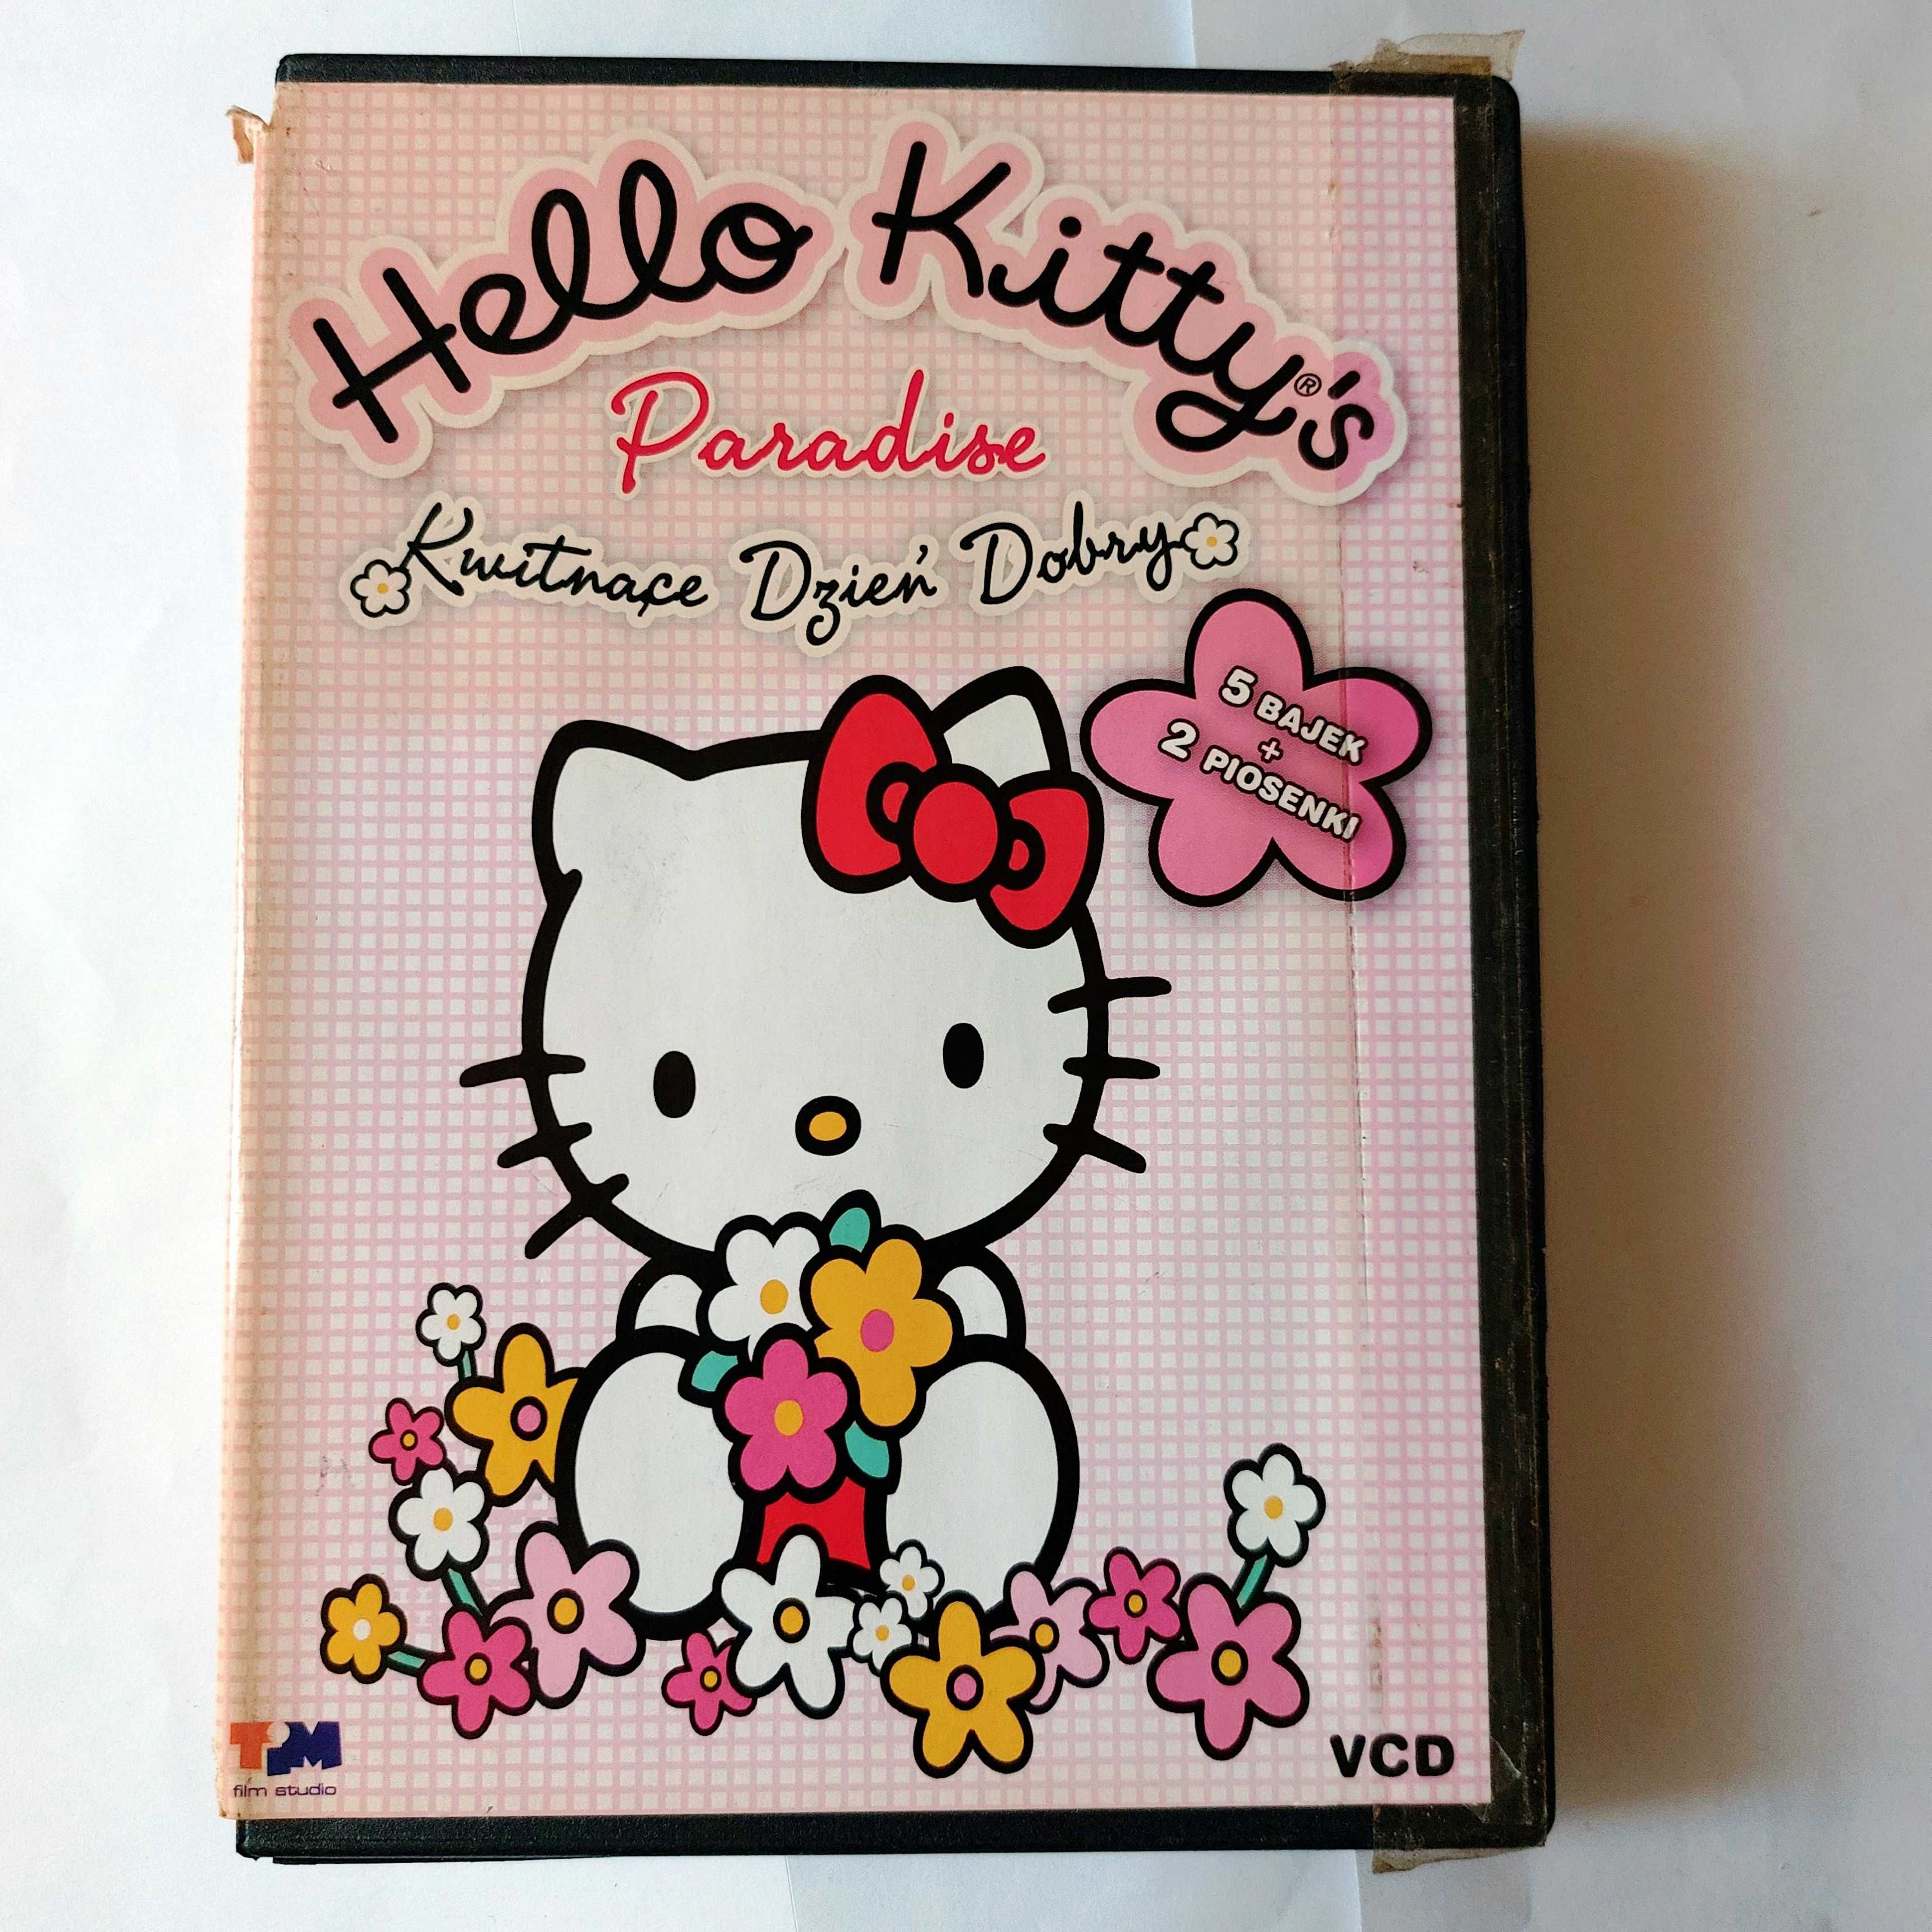 HELLO KITTY: kwitnący dzień dobry | film na DVD/VCD